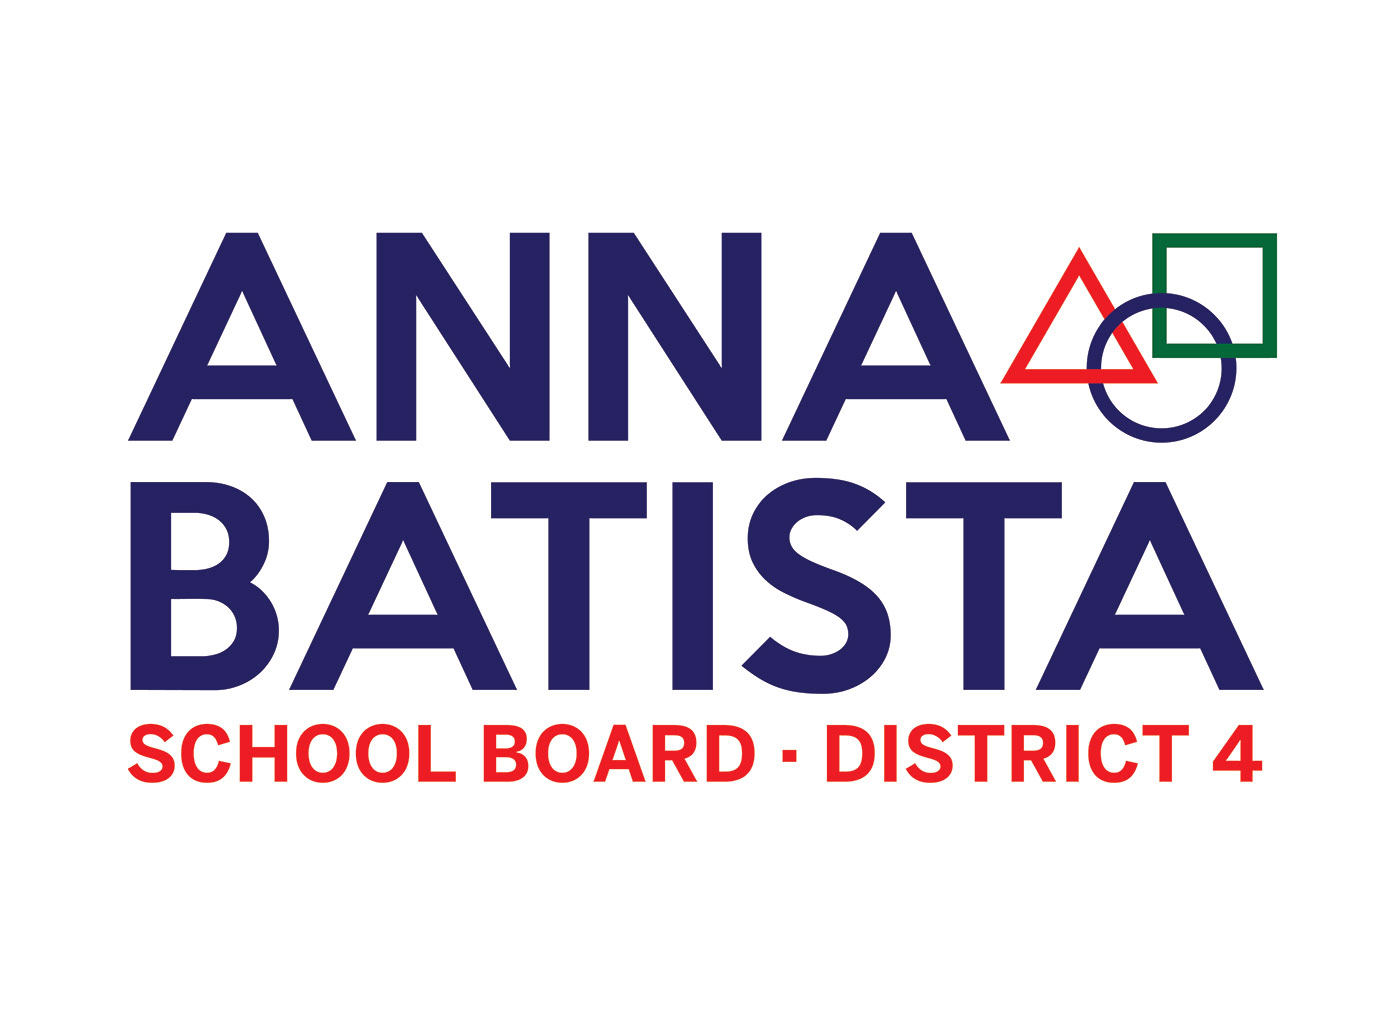 Anna Batista school board Logo Design Pittsburgh public schools circle triangle square mayor peduto lawn sign